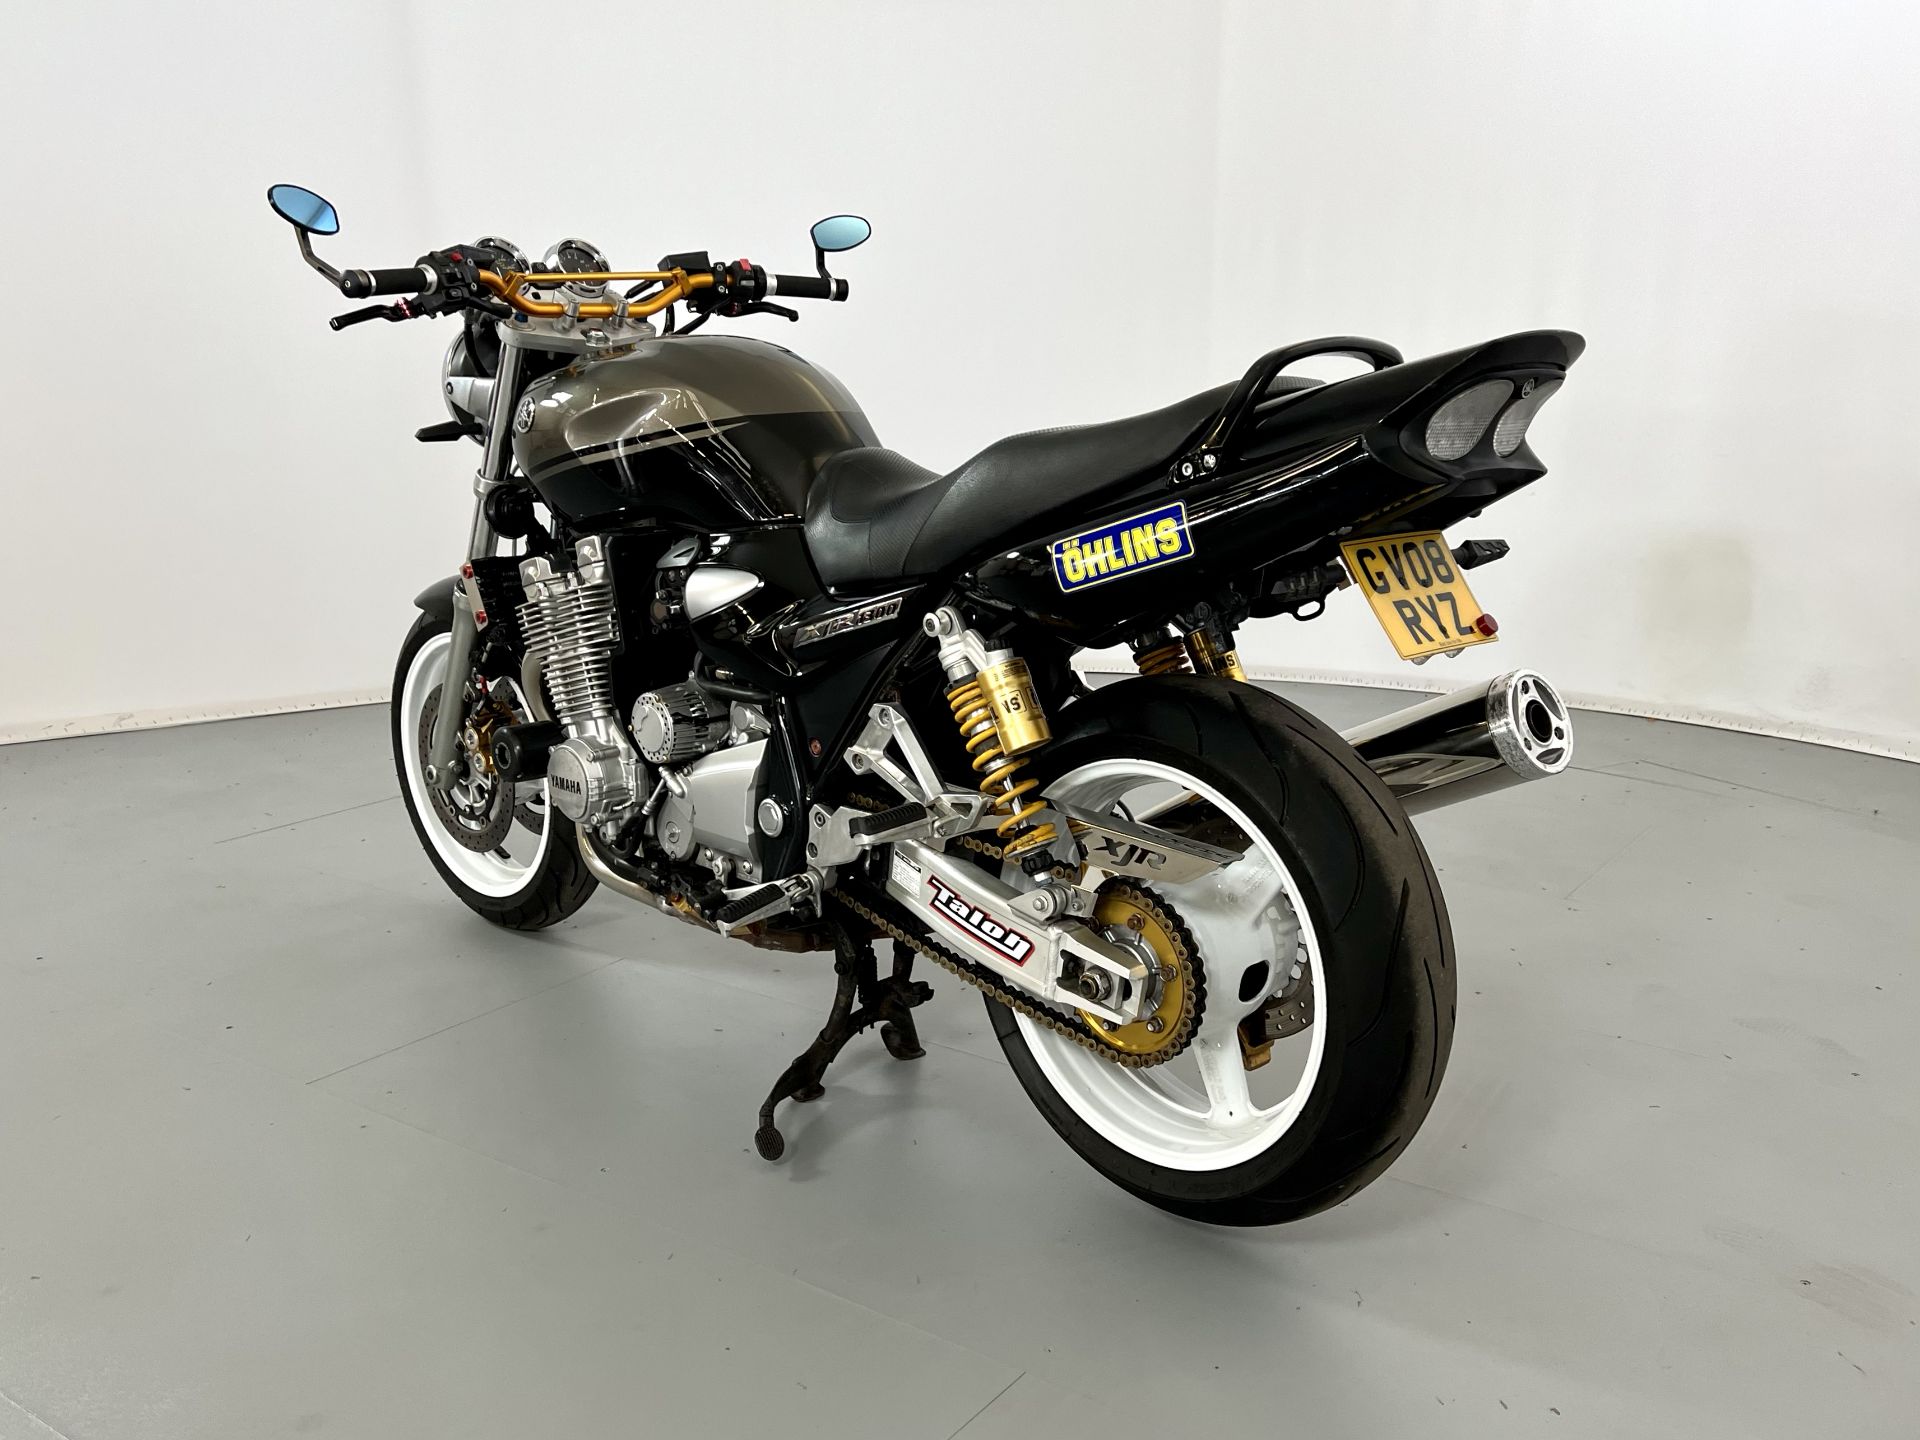 Yamaha XJR 1300 - Image 6 of 11